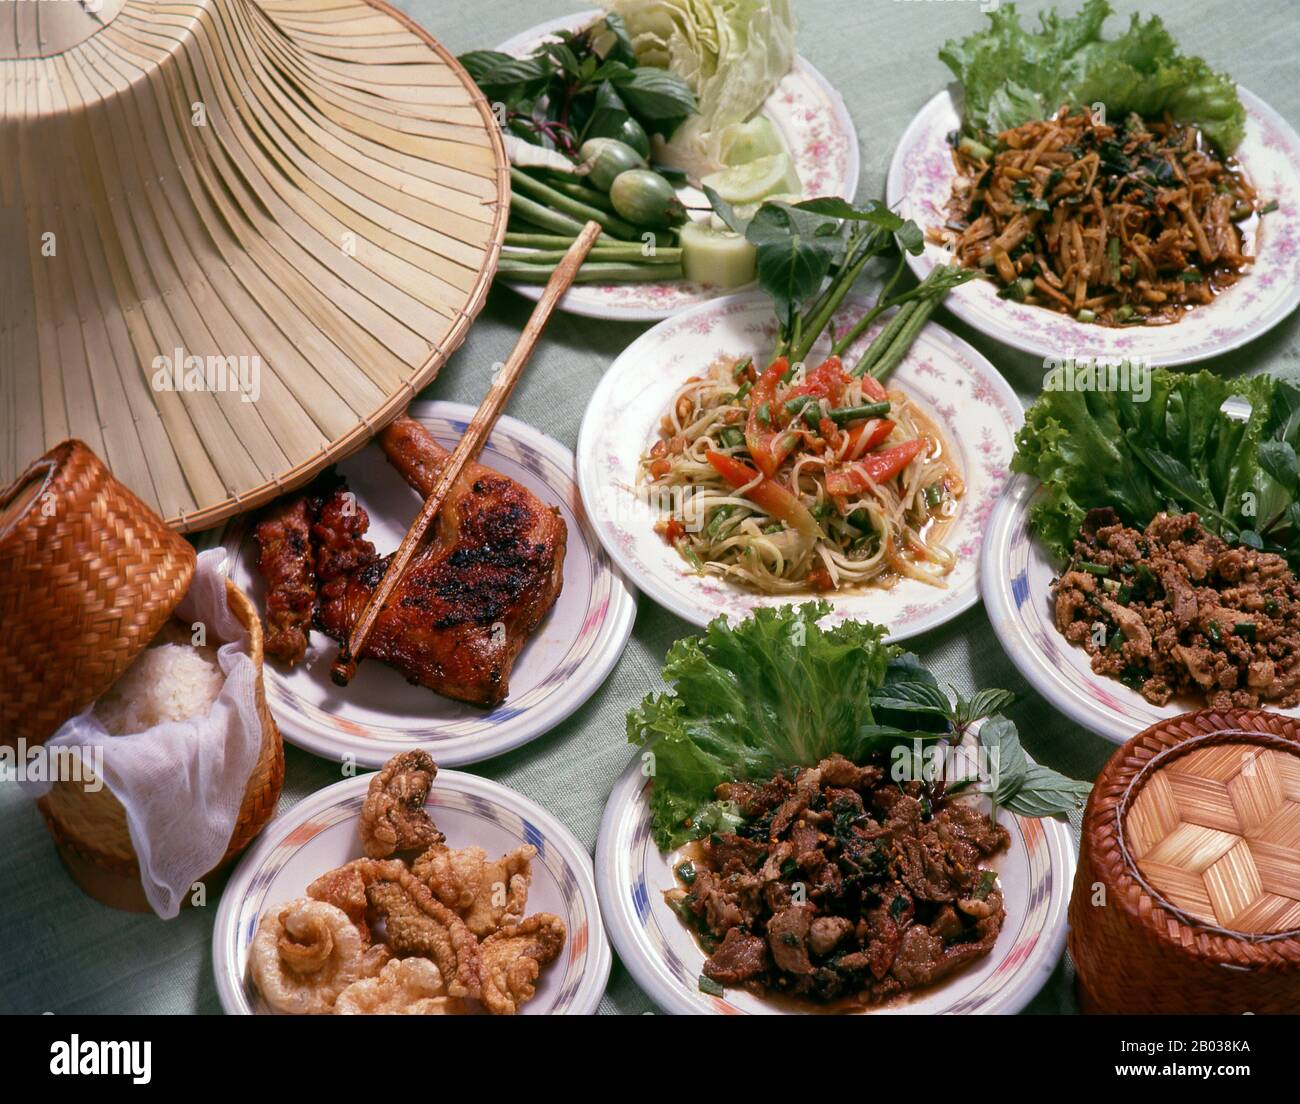 Die nordöstliche thailändische und laotische Küche ist im Allgemeinen die einfache, würzige, Bauernsorte, die die Einwohner dieser relativ armen Region genießen. Zu den bekanntesten Gerichten gehören Somtam - Papaya-Salat mit Fischsauce, Knoblauch, Chilipapern, Erdnüsse und Puu na Felskrabbe, die dem Geschmack hinzugefügt werden. Das wird oft mit kai Yang verzehrt - gegrilltes Huhn, das am besten aus Sisaket in der Nähe der Grenze zu Lao stammt. Der vielleicht klassischste von Isaan-Gerichten ist Larb - gewürztes Hackfleisch, das in der Regel mit Salat und einer Beilage aus rohem Gemüse serviert wird. Im Gegensatz zu Bangkok und dem Süden, khao Niaw, oder "stickiger Reis Stockfoto